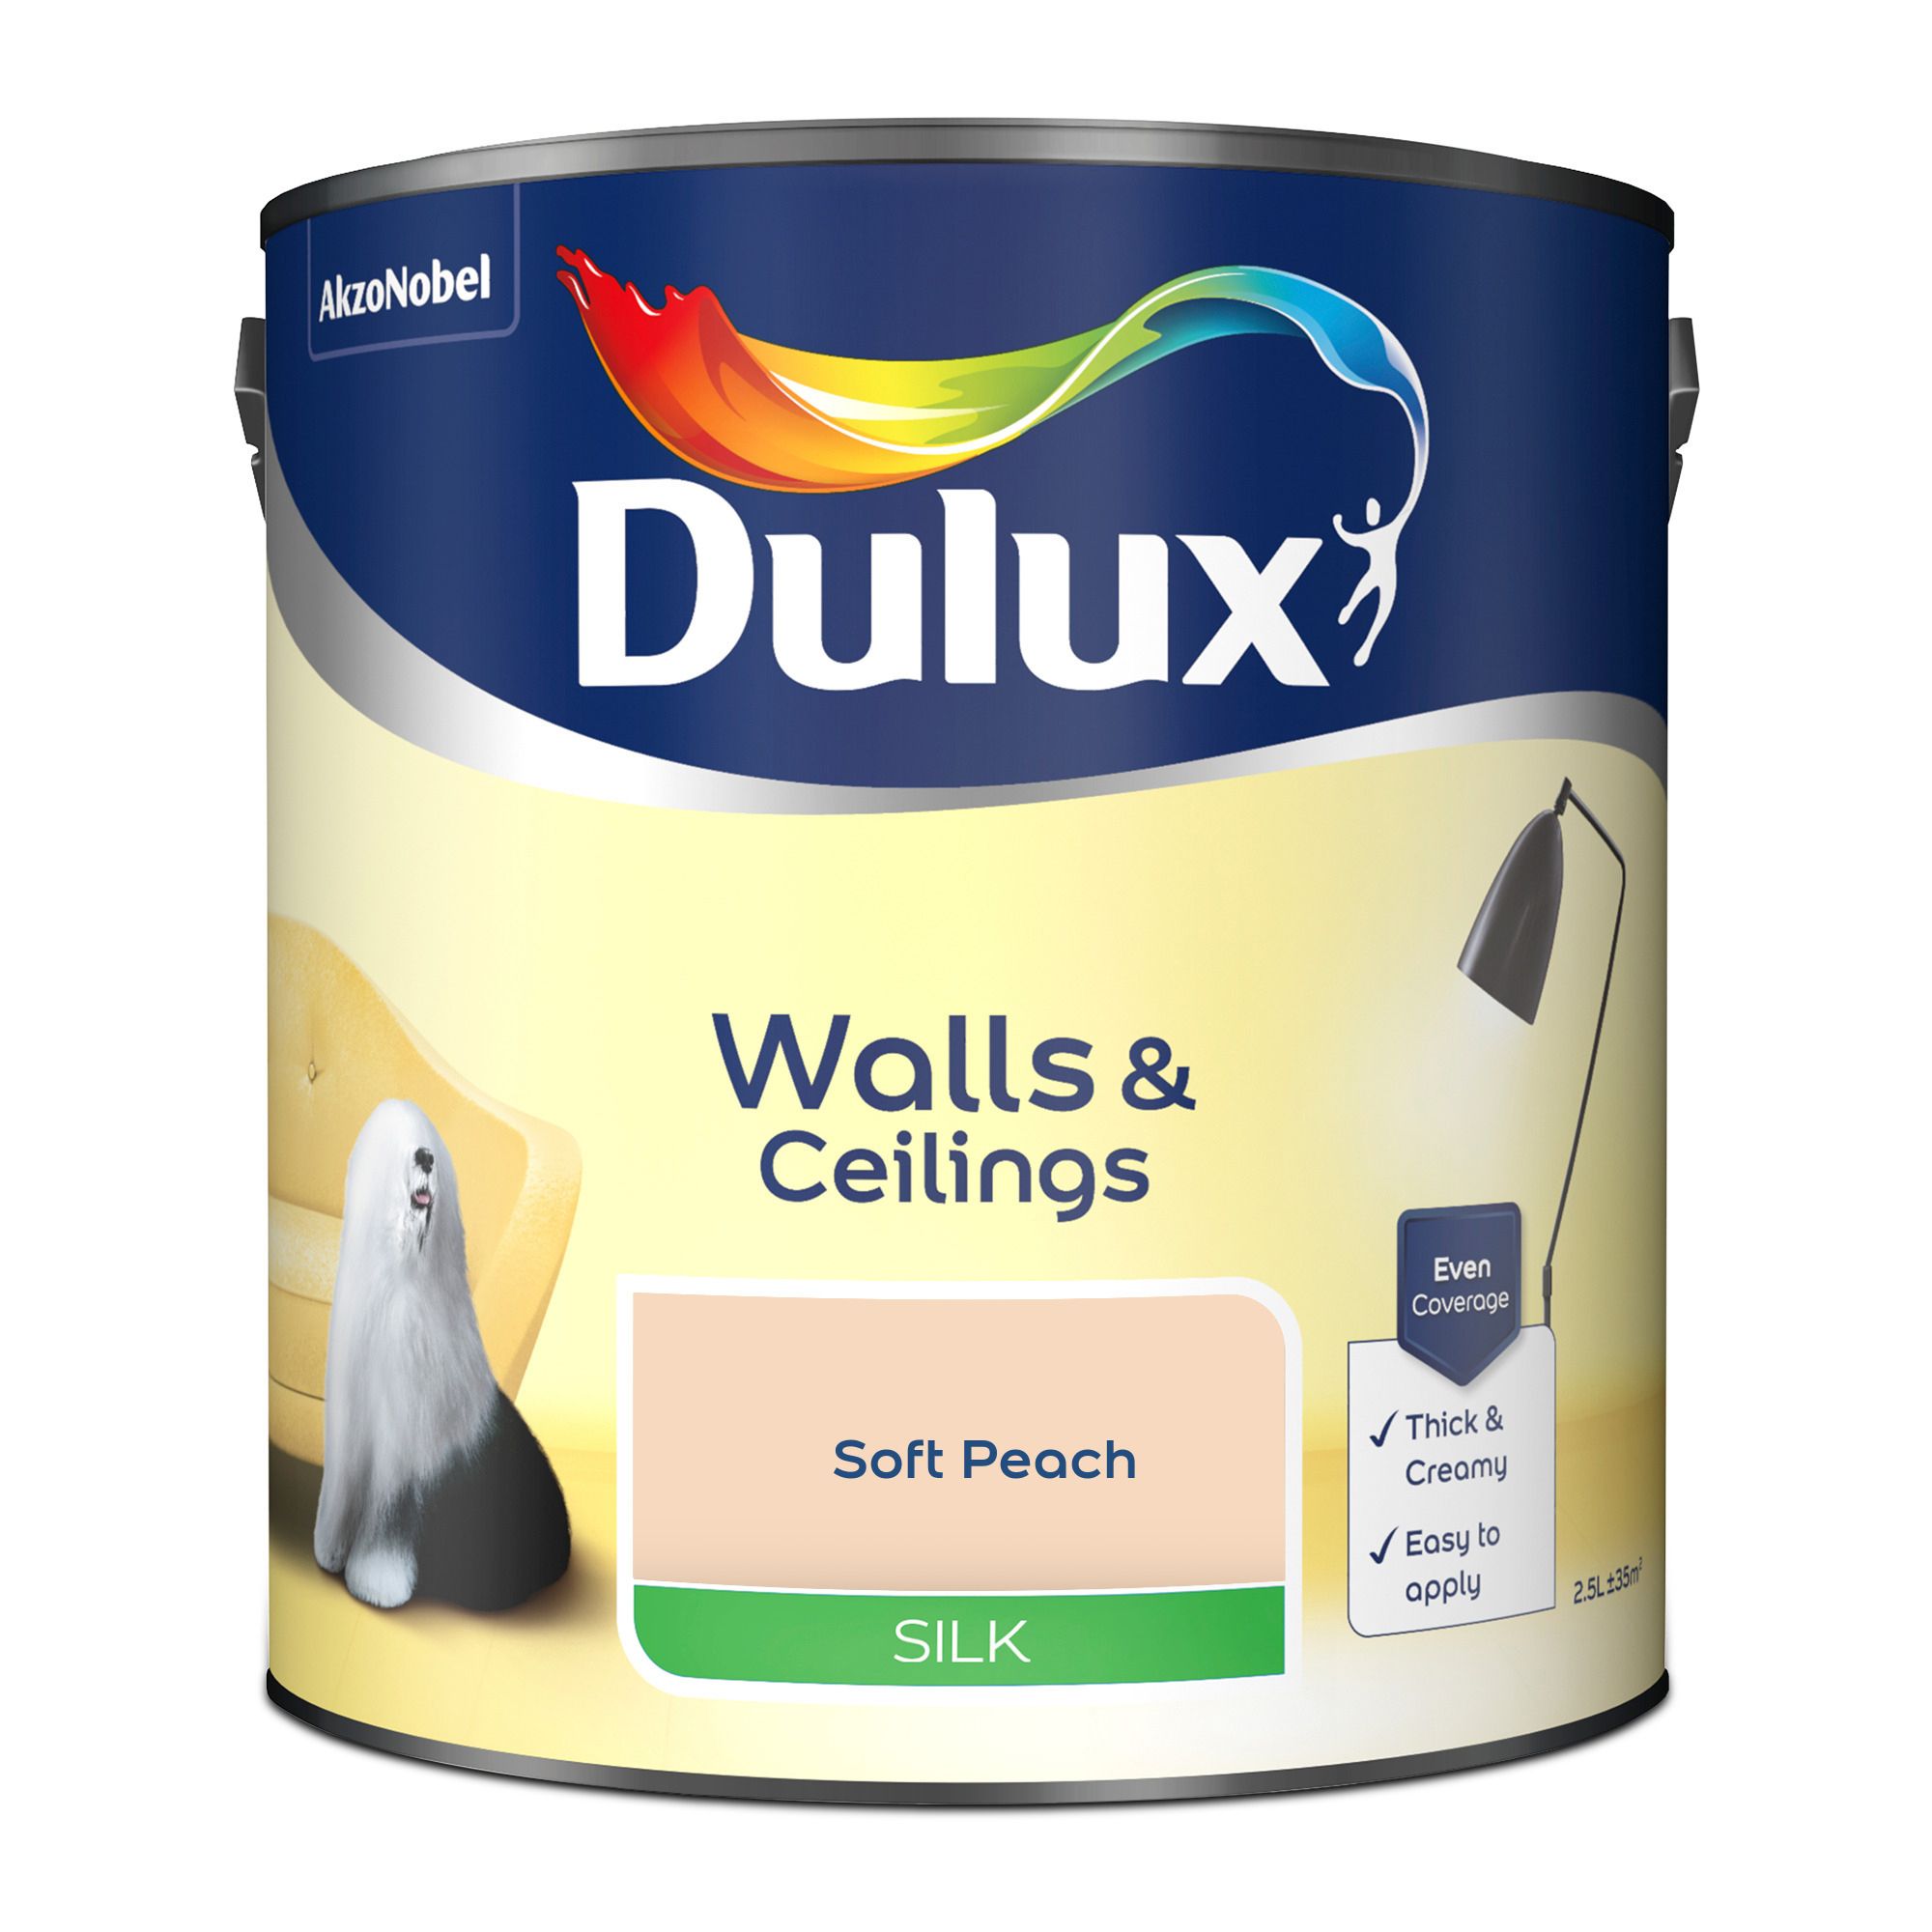 Dulux Walls & ceilings Soft peach Silk Emulsion paint, 2.5L